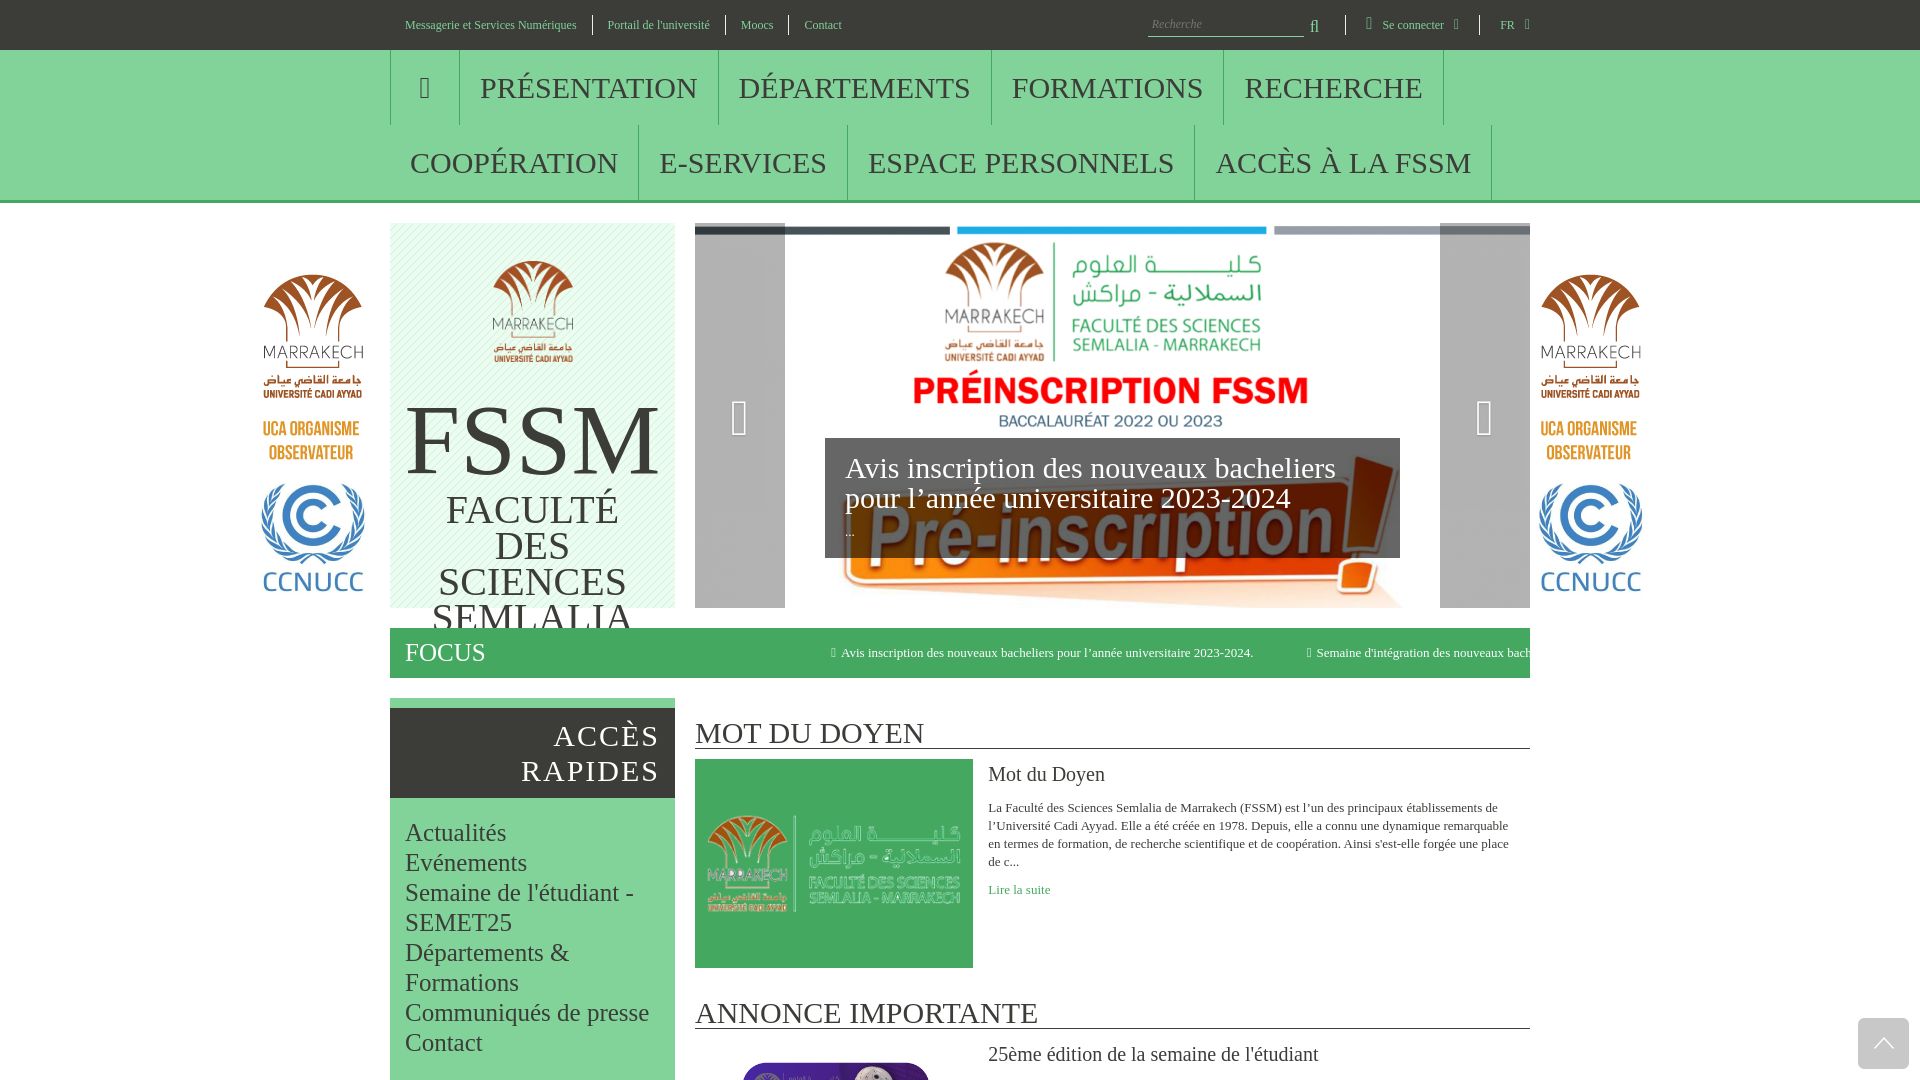 Website status fssm.uca.ma is   ONLINE